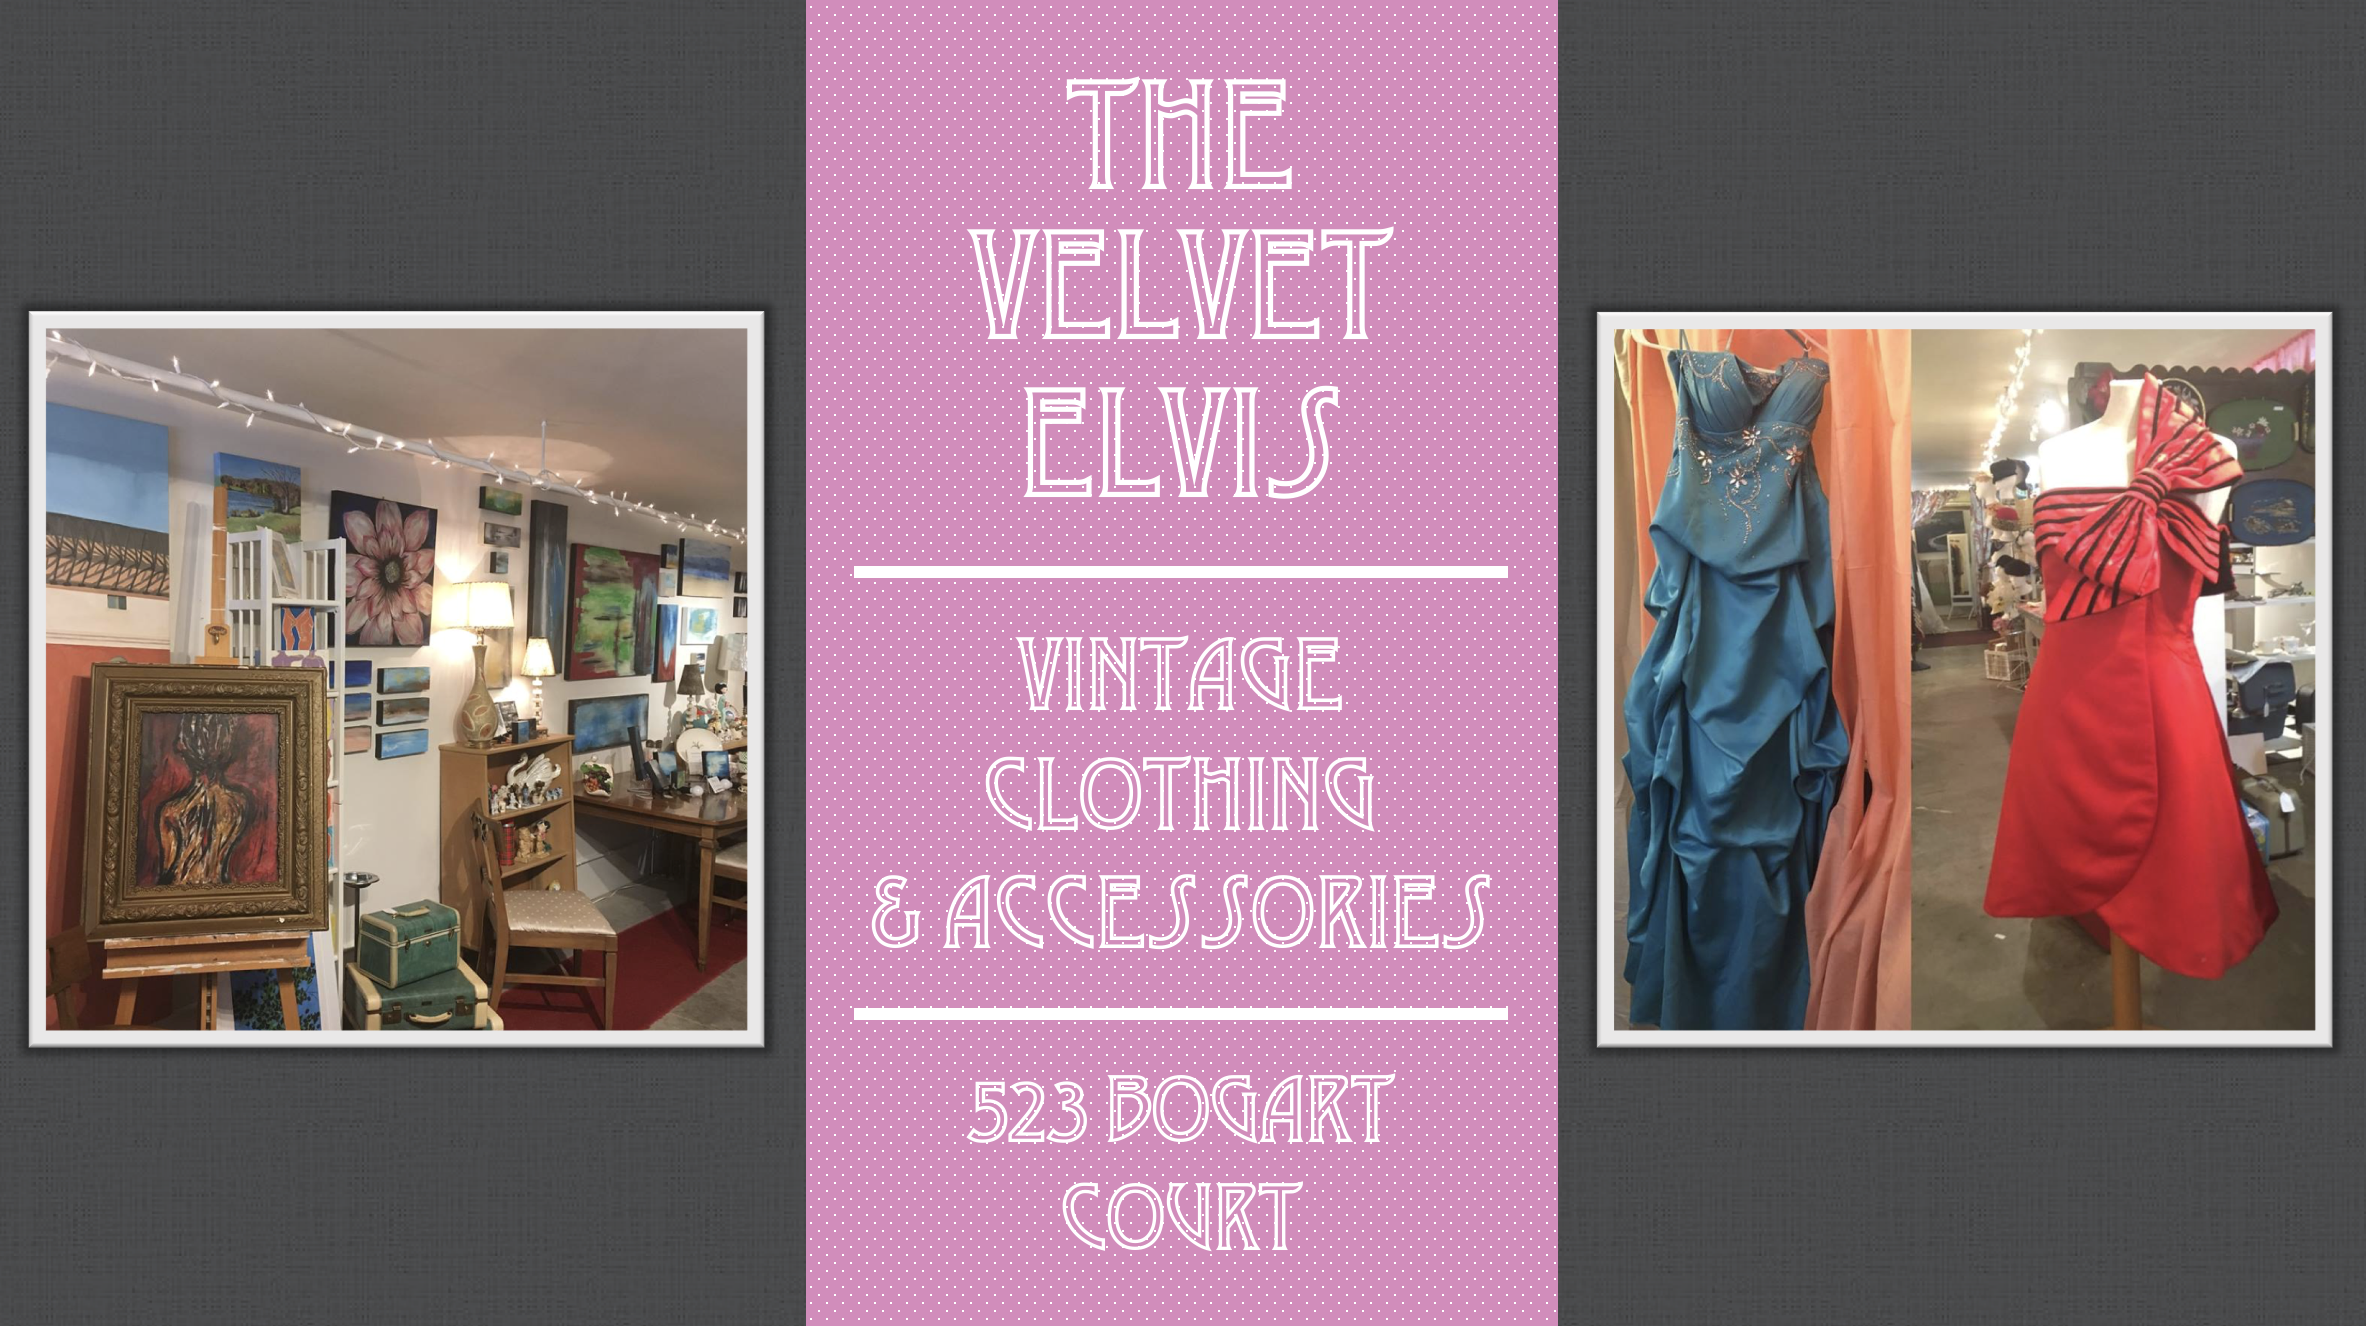 Business Alert: The Velvet Elvis image